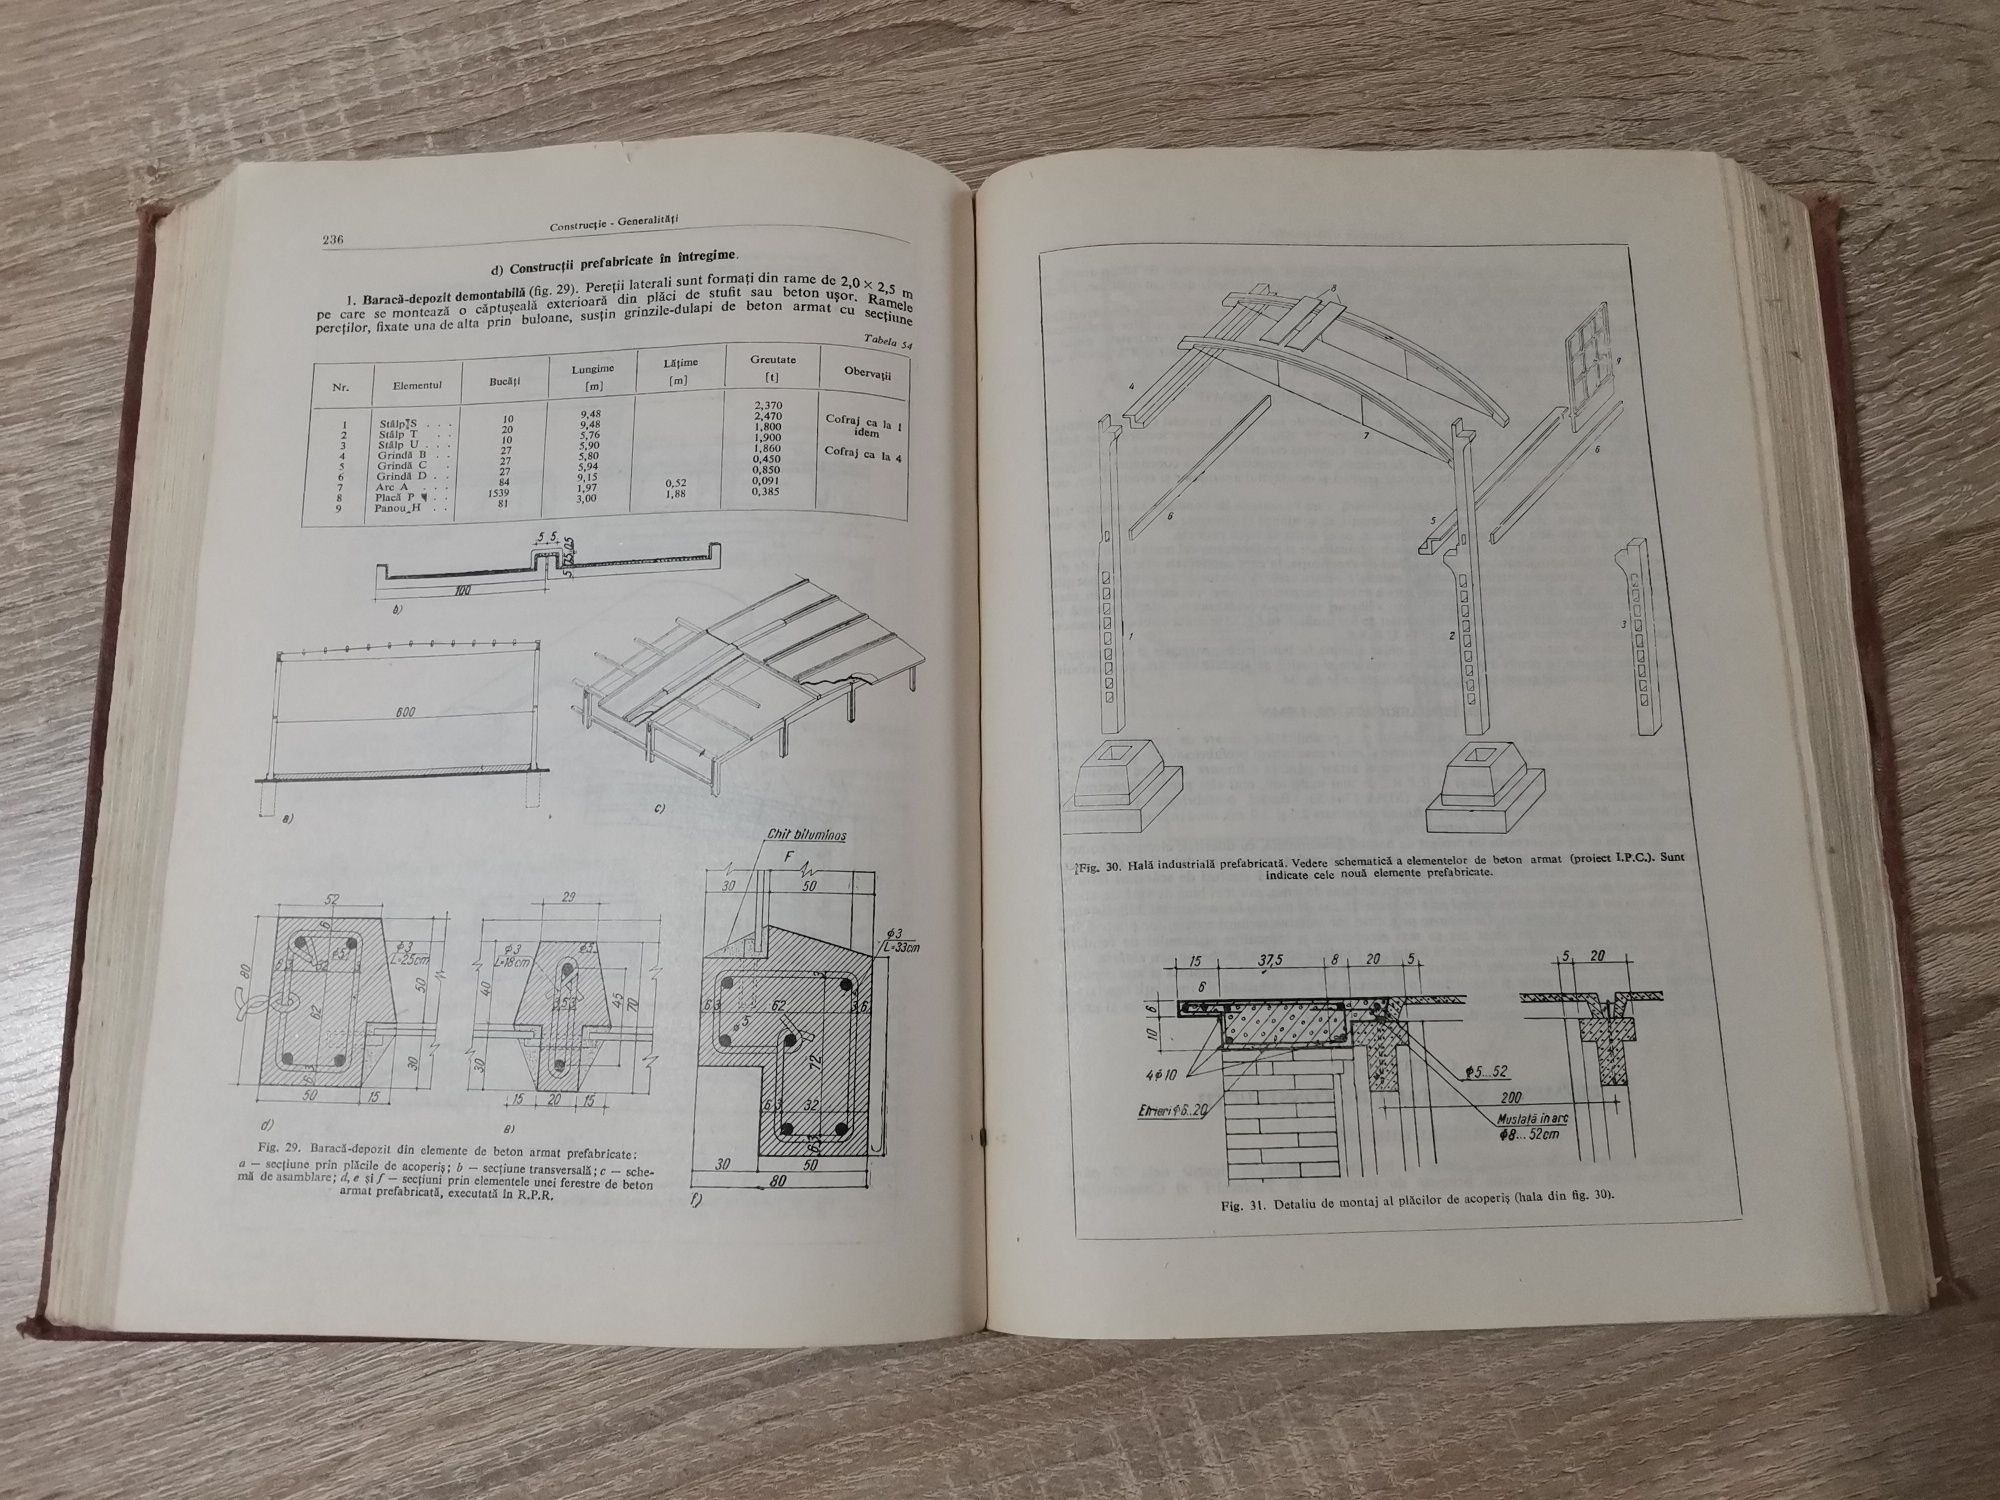 Manualul arhitectului proiectant